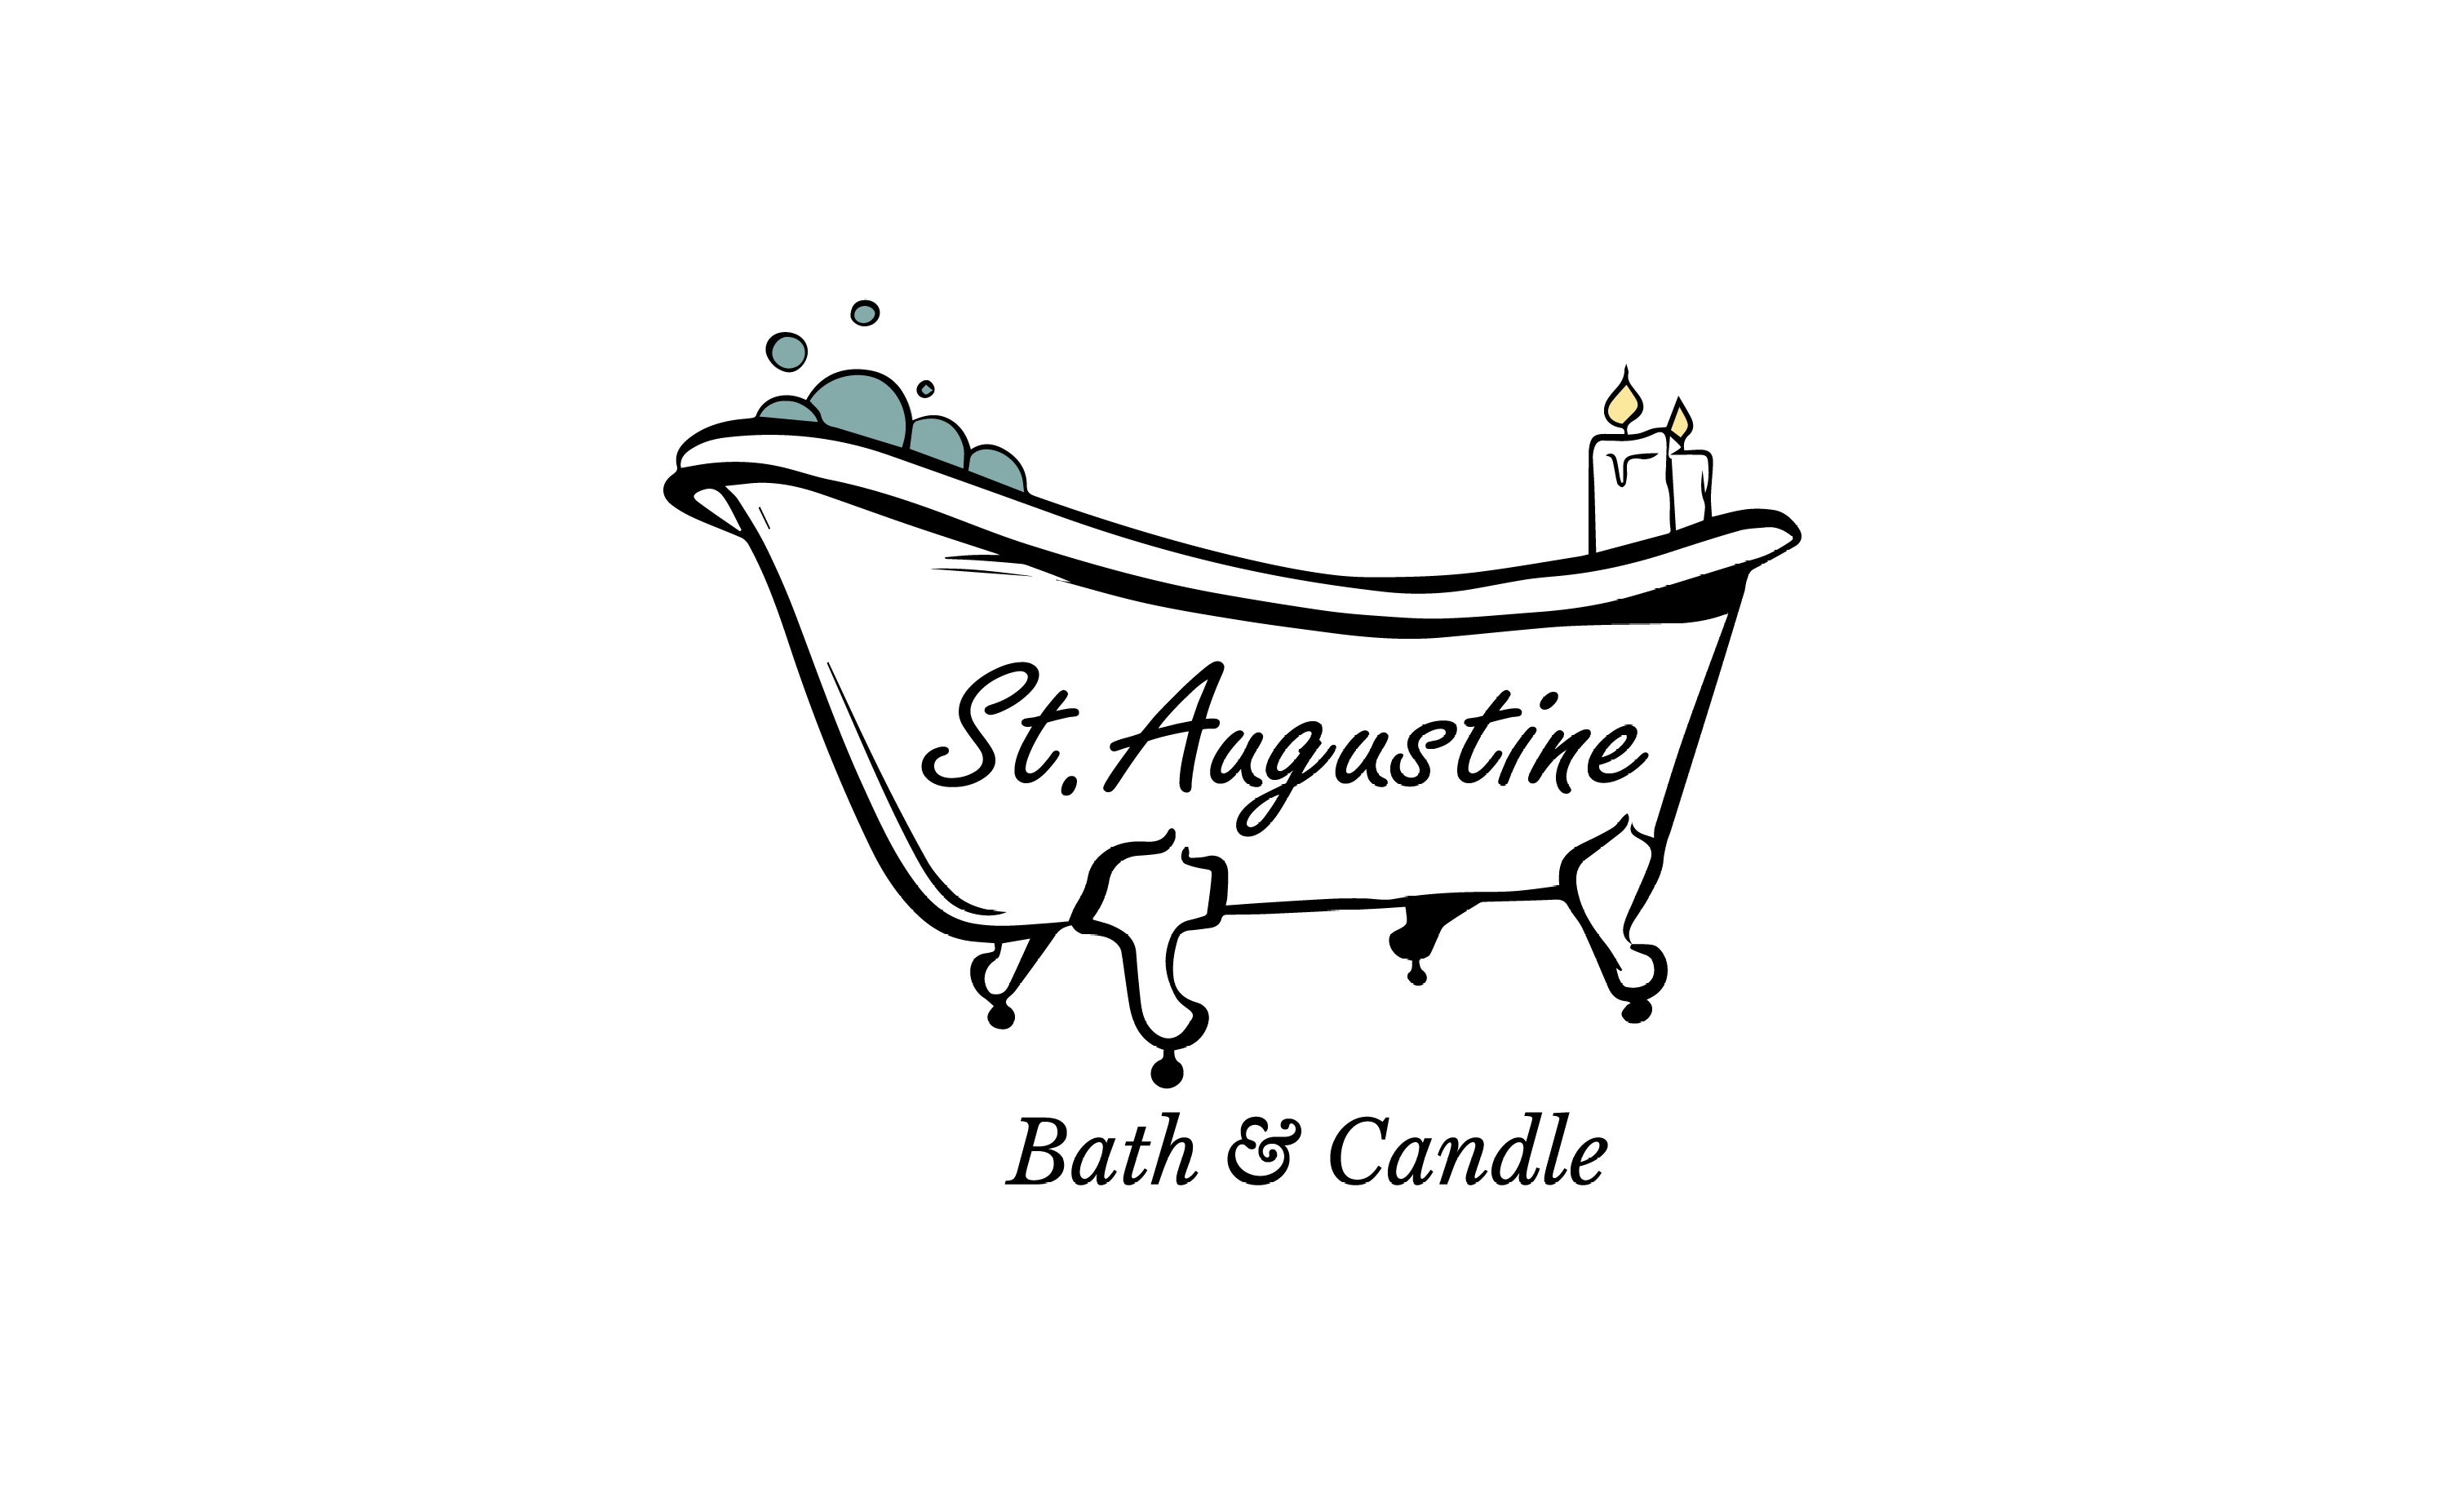 St Augustine Bath & Candle - Carl Hochreiter